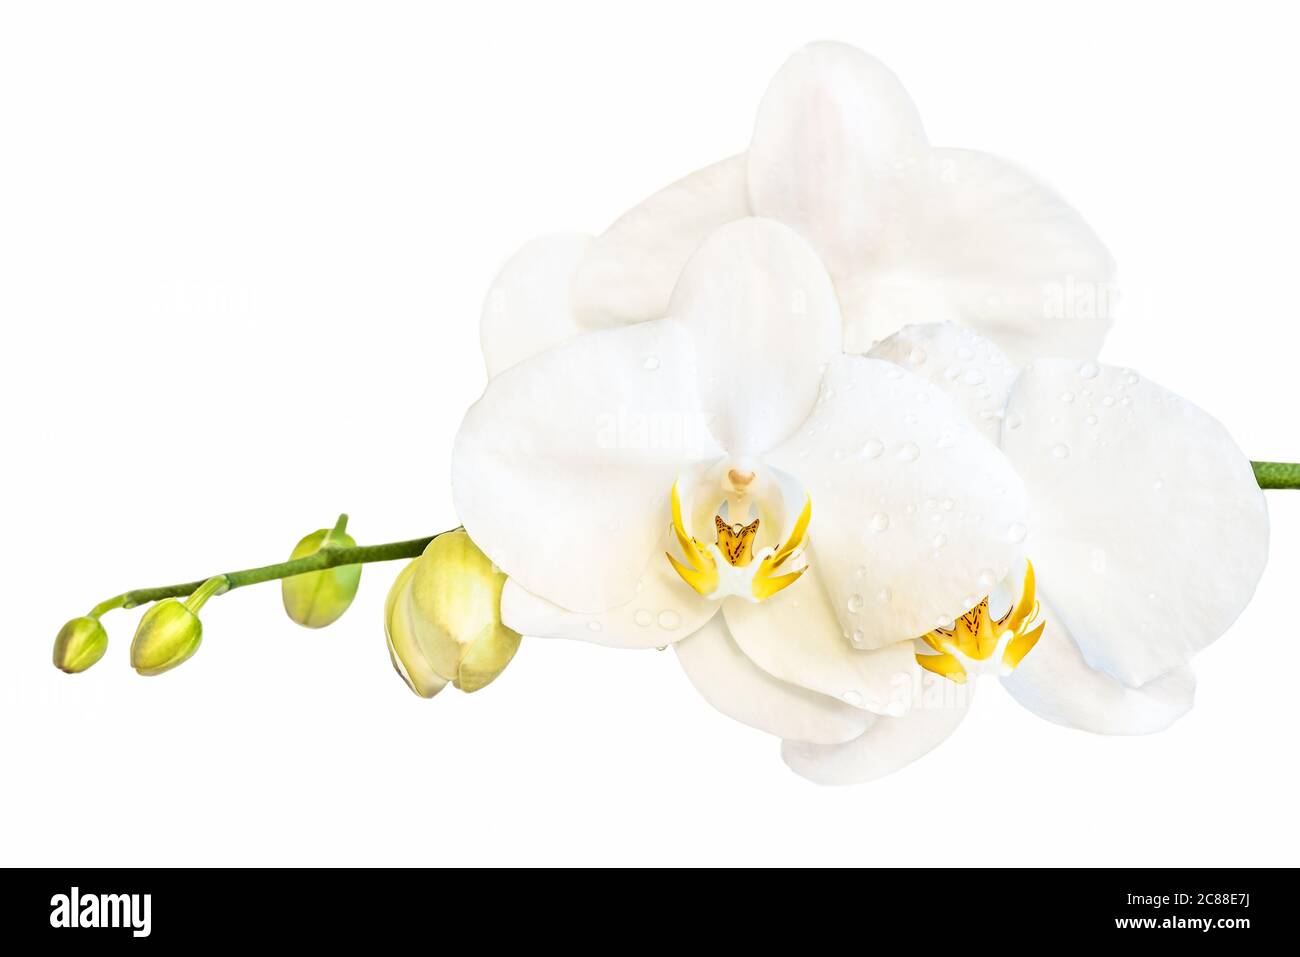 Schöne weiße phalaenopsis Orchideenblume, bekannt als flatternde Schmetterlinge, vor einem weißen Hintergrund. Stockfoto